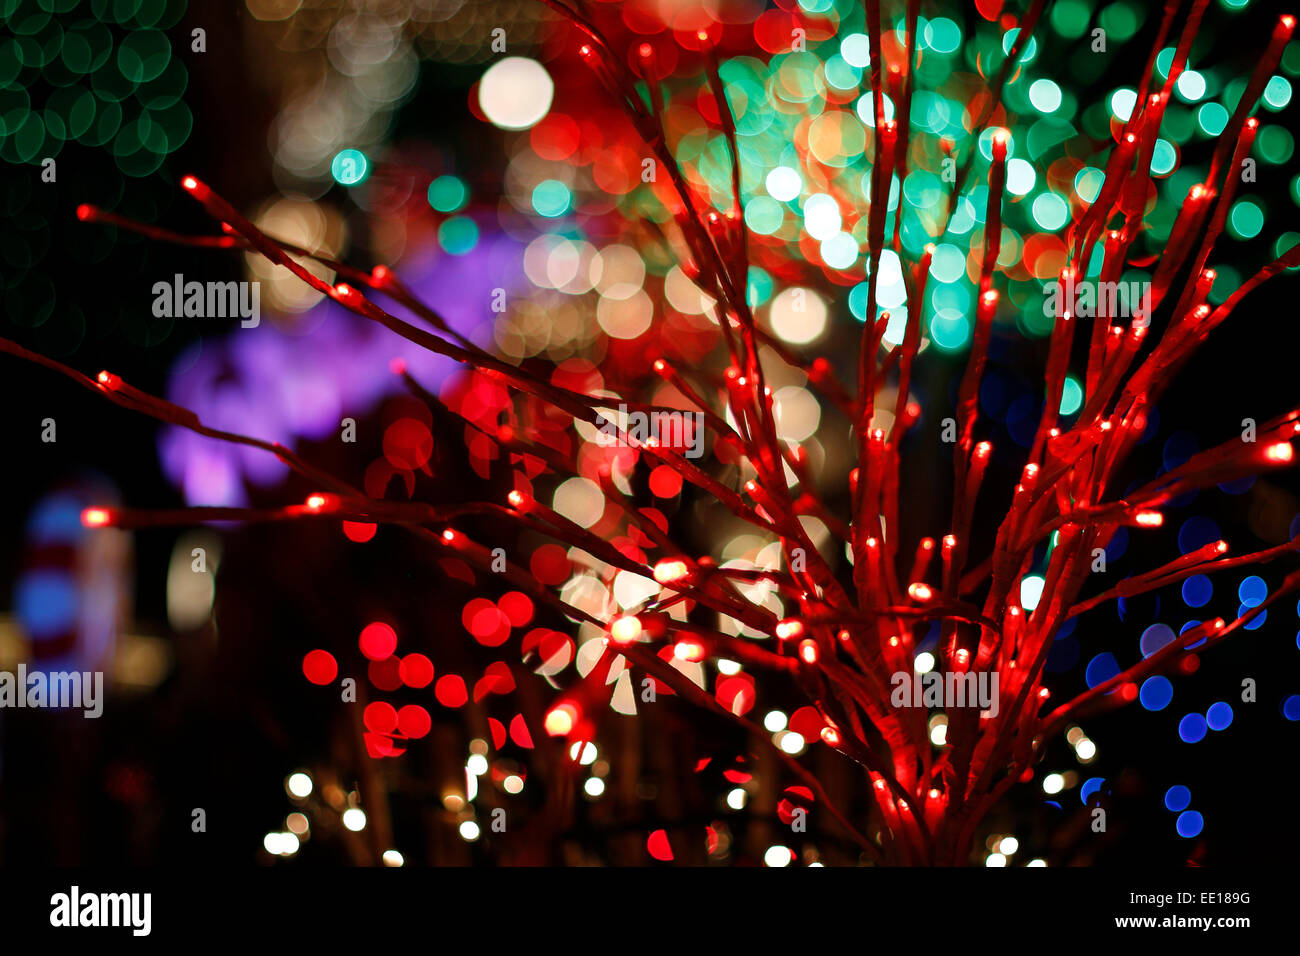 Holiday decorativo rami di albero avvolto con luci colorate bokeh di fondo Foto Stock